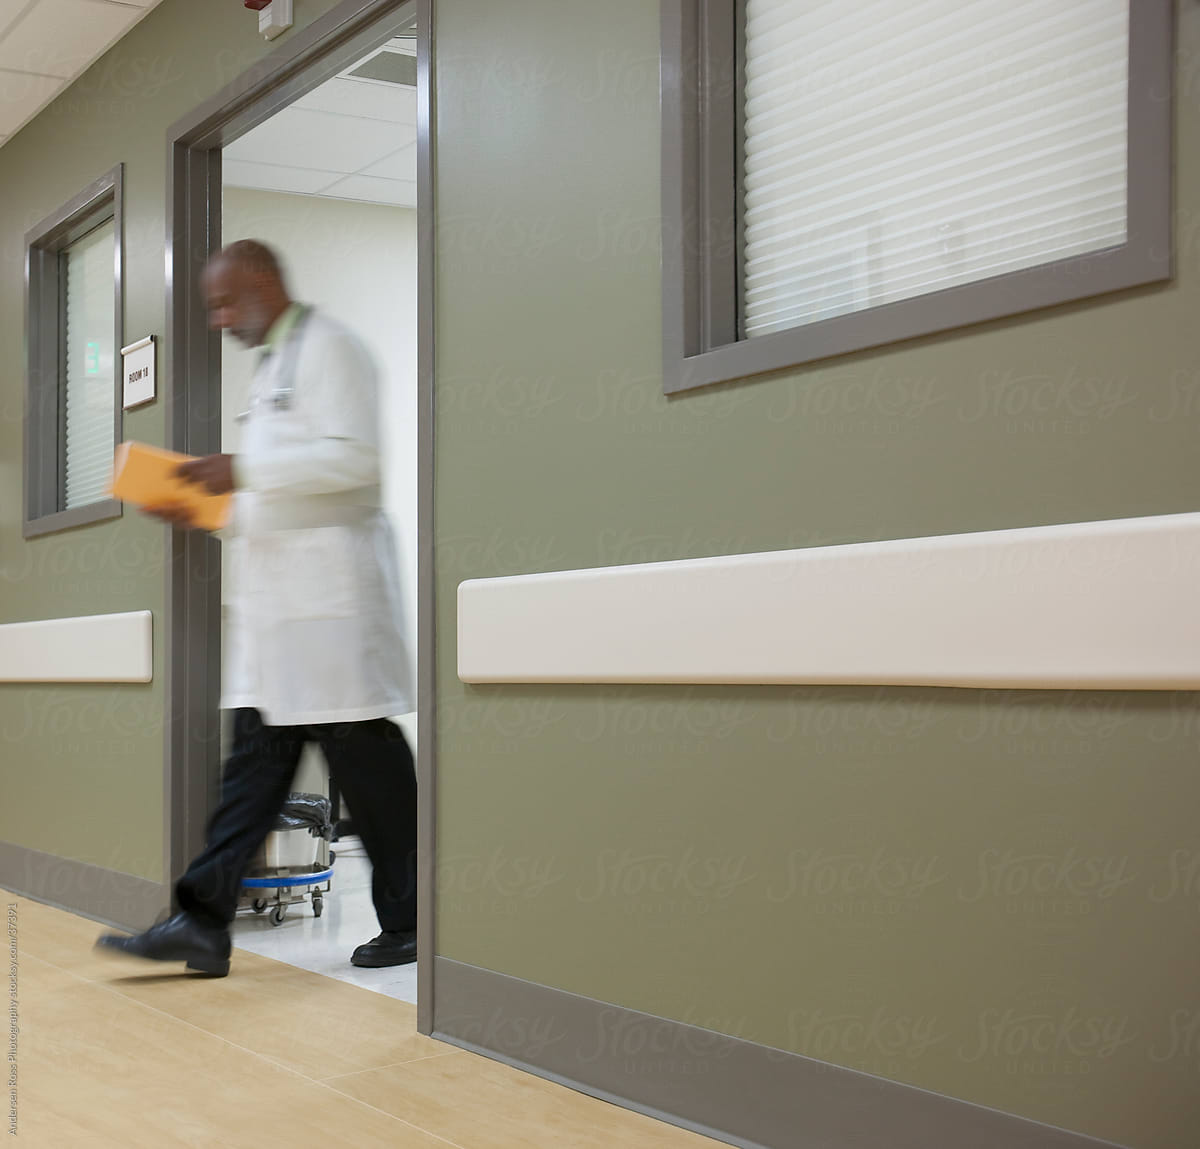 Doctor walking in hospital corridor